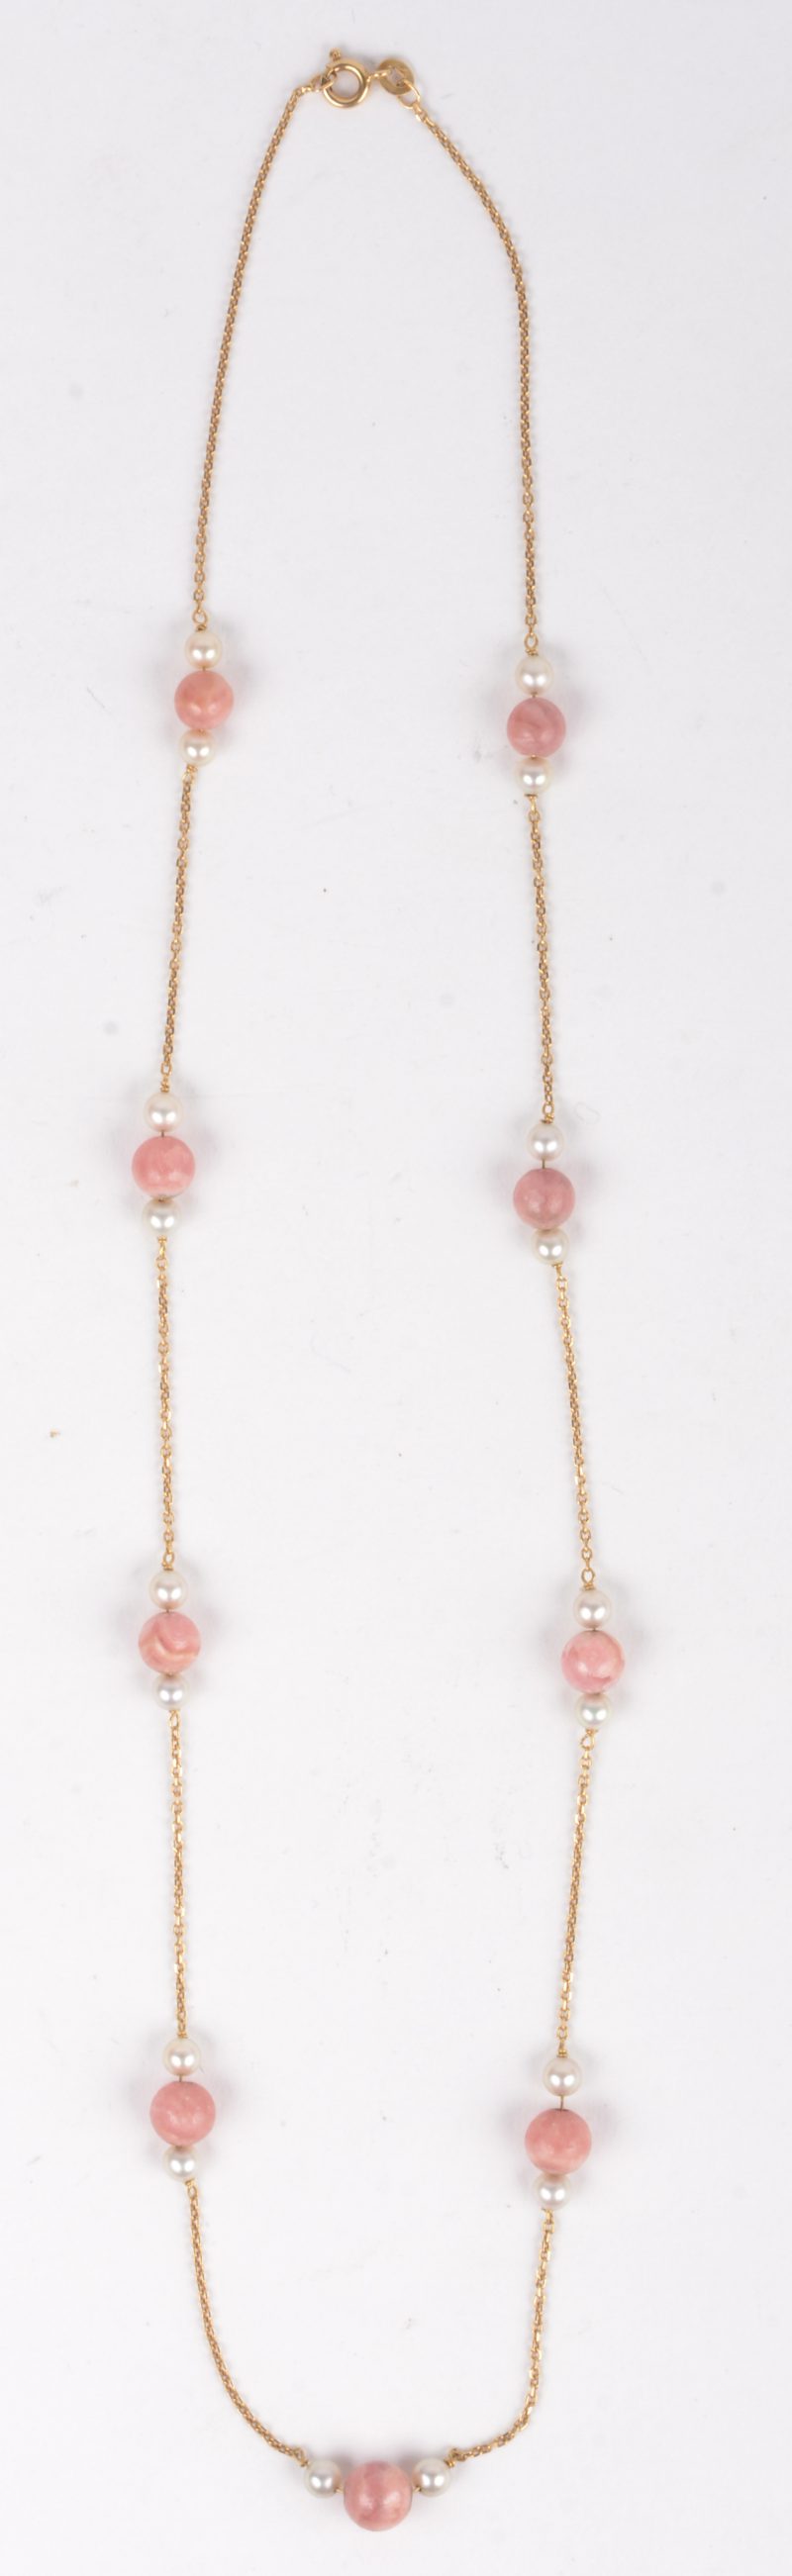 Een 18 k geelgouden ketting bezet met kleine parels en bolletjes van roze kwarts.